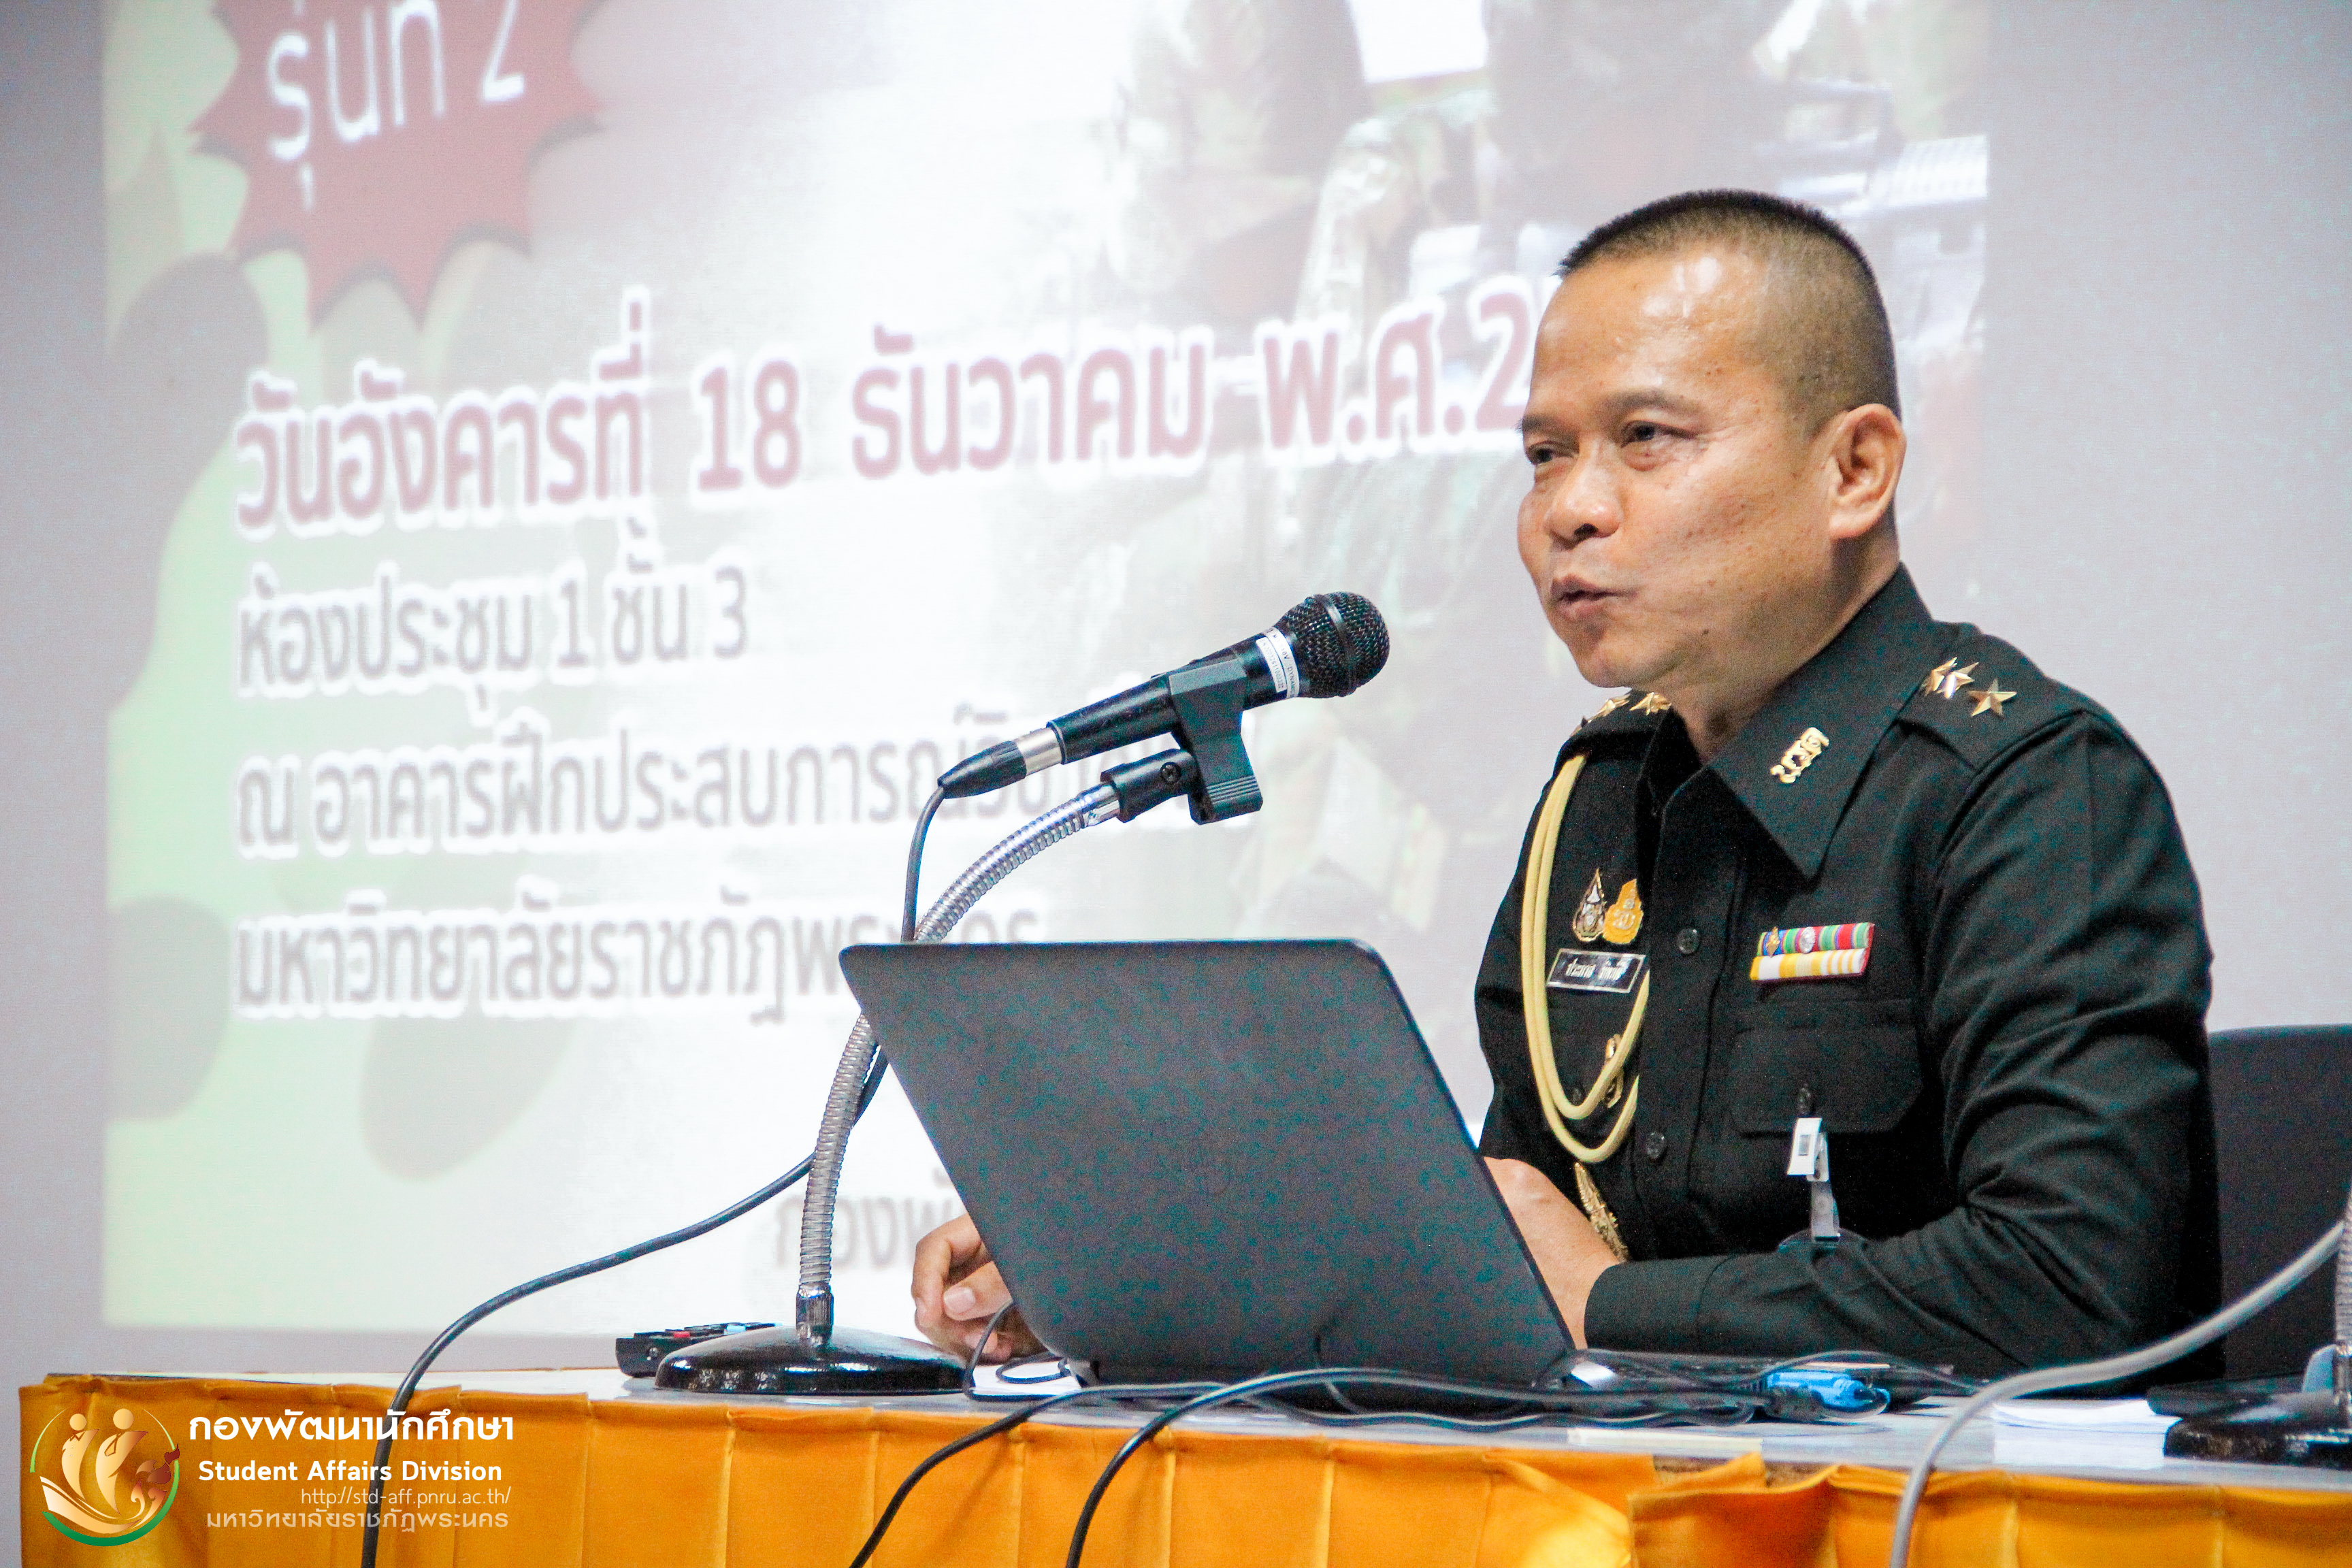 18 กุมภาพันธ์ 2563 งานผ่อนผันการตรวจเลือกทหาร กองพัฒนานักศึกษา จัดโครงการอบรมให้ความรู้แนวปฏิบัติกับนักศึกษาที่ยื่นเรื่องผ่อนผันการตรวจเลือกการเกณฑ์ทหาร ประจำปี 2563 (รุ่นที่ 2) ณ ห้องประชุมใหญ่ อาคาร